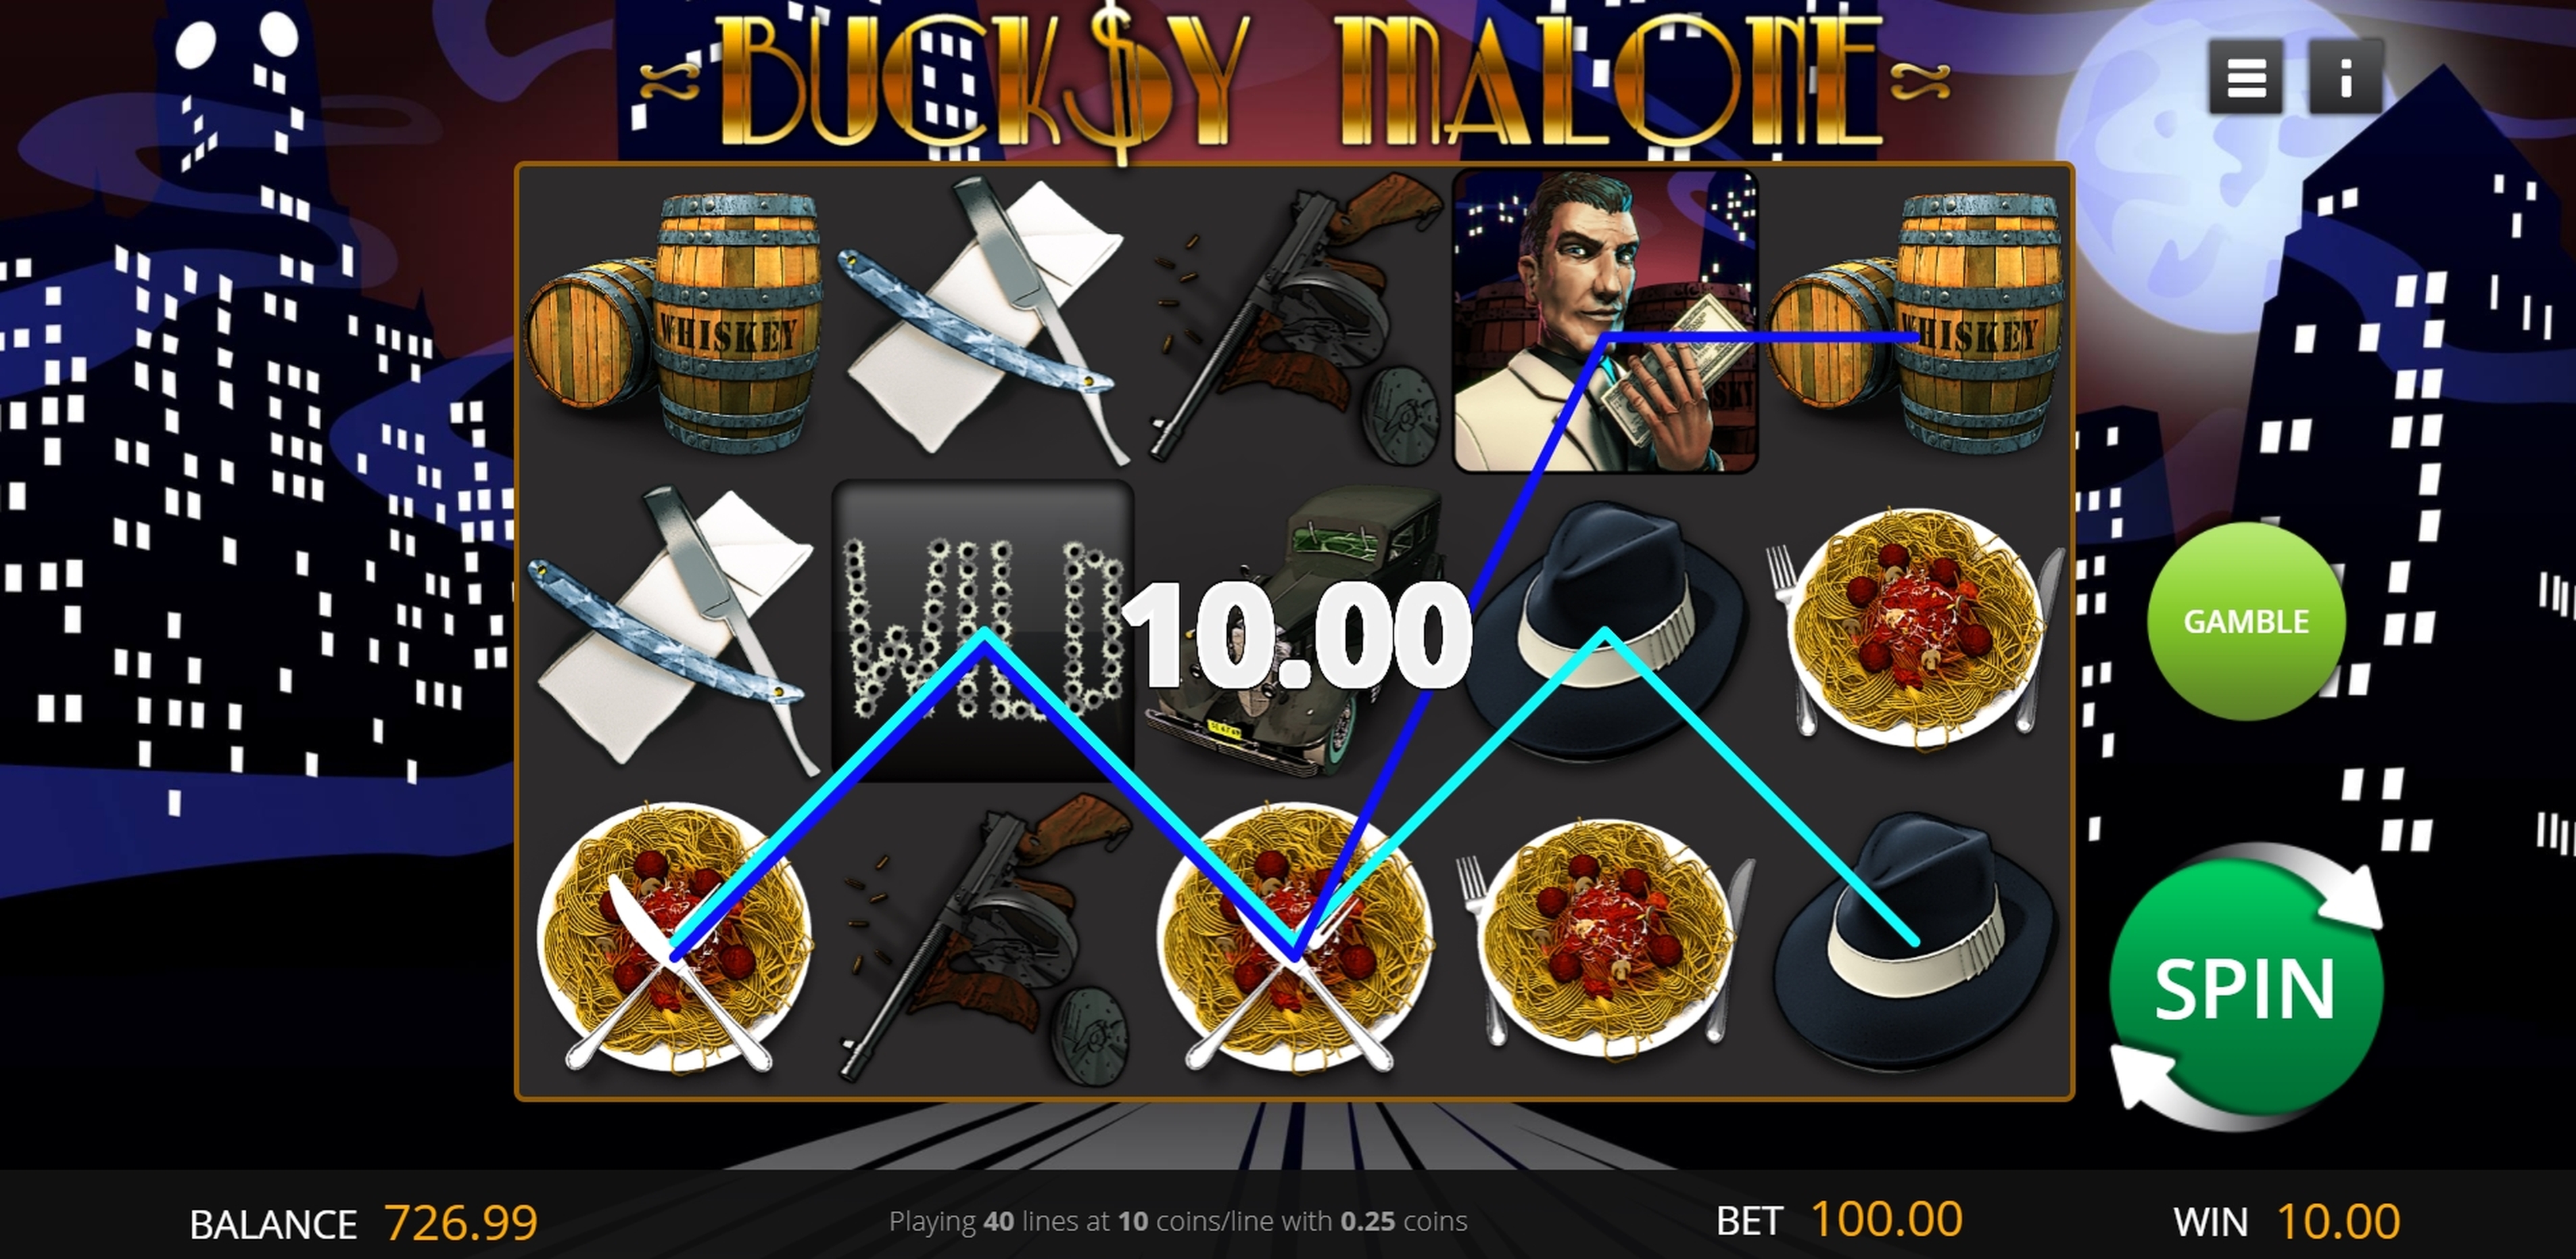 Win Money in Bucksy Malone Free Slot Game by Genii